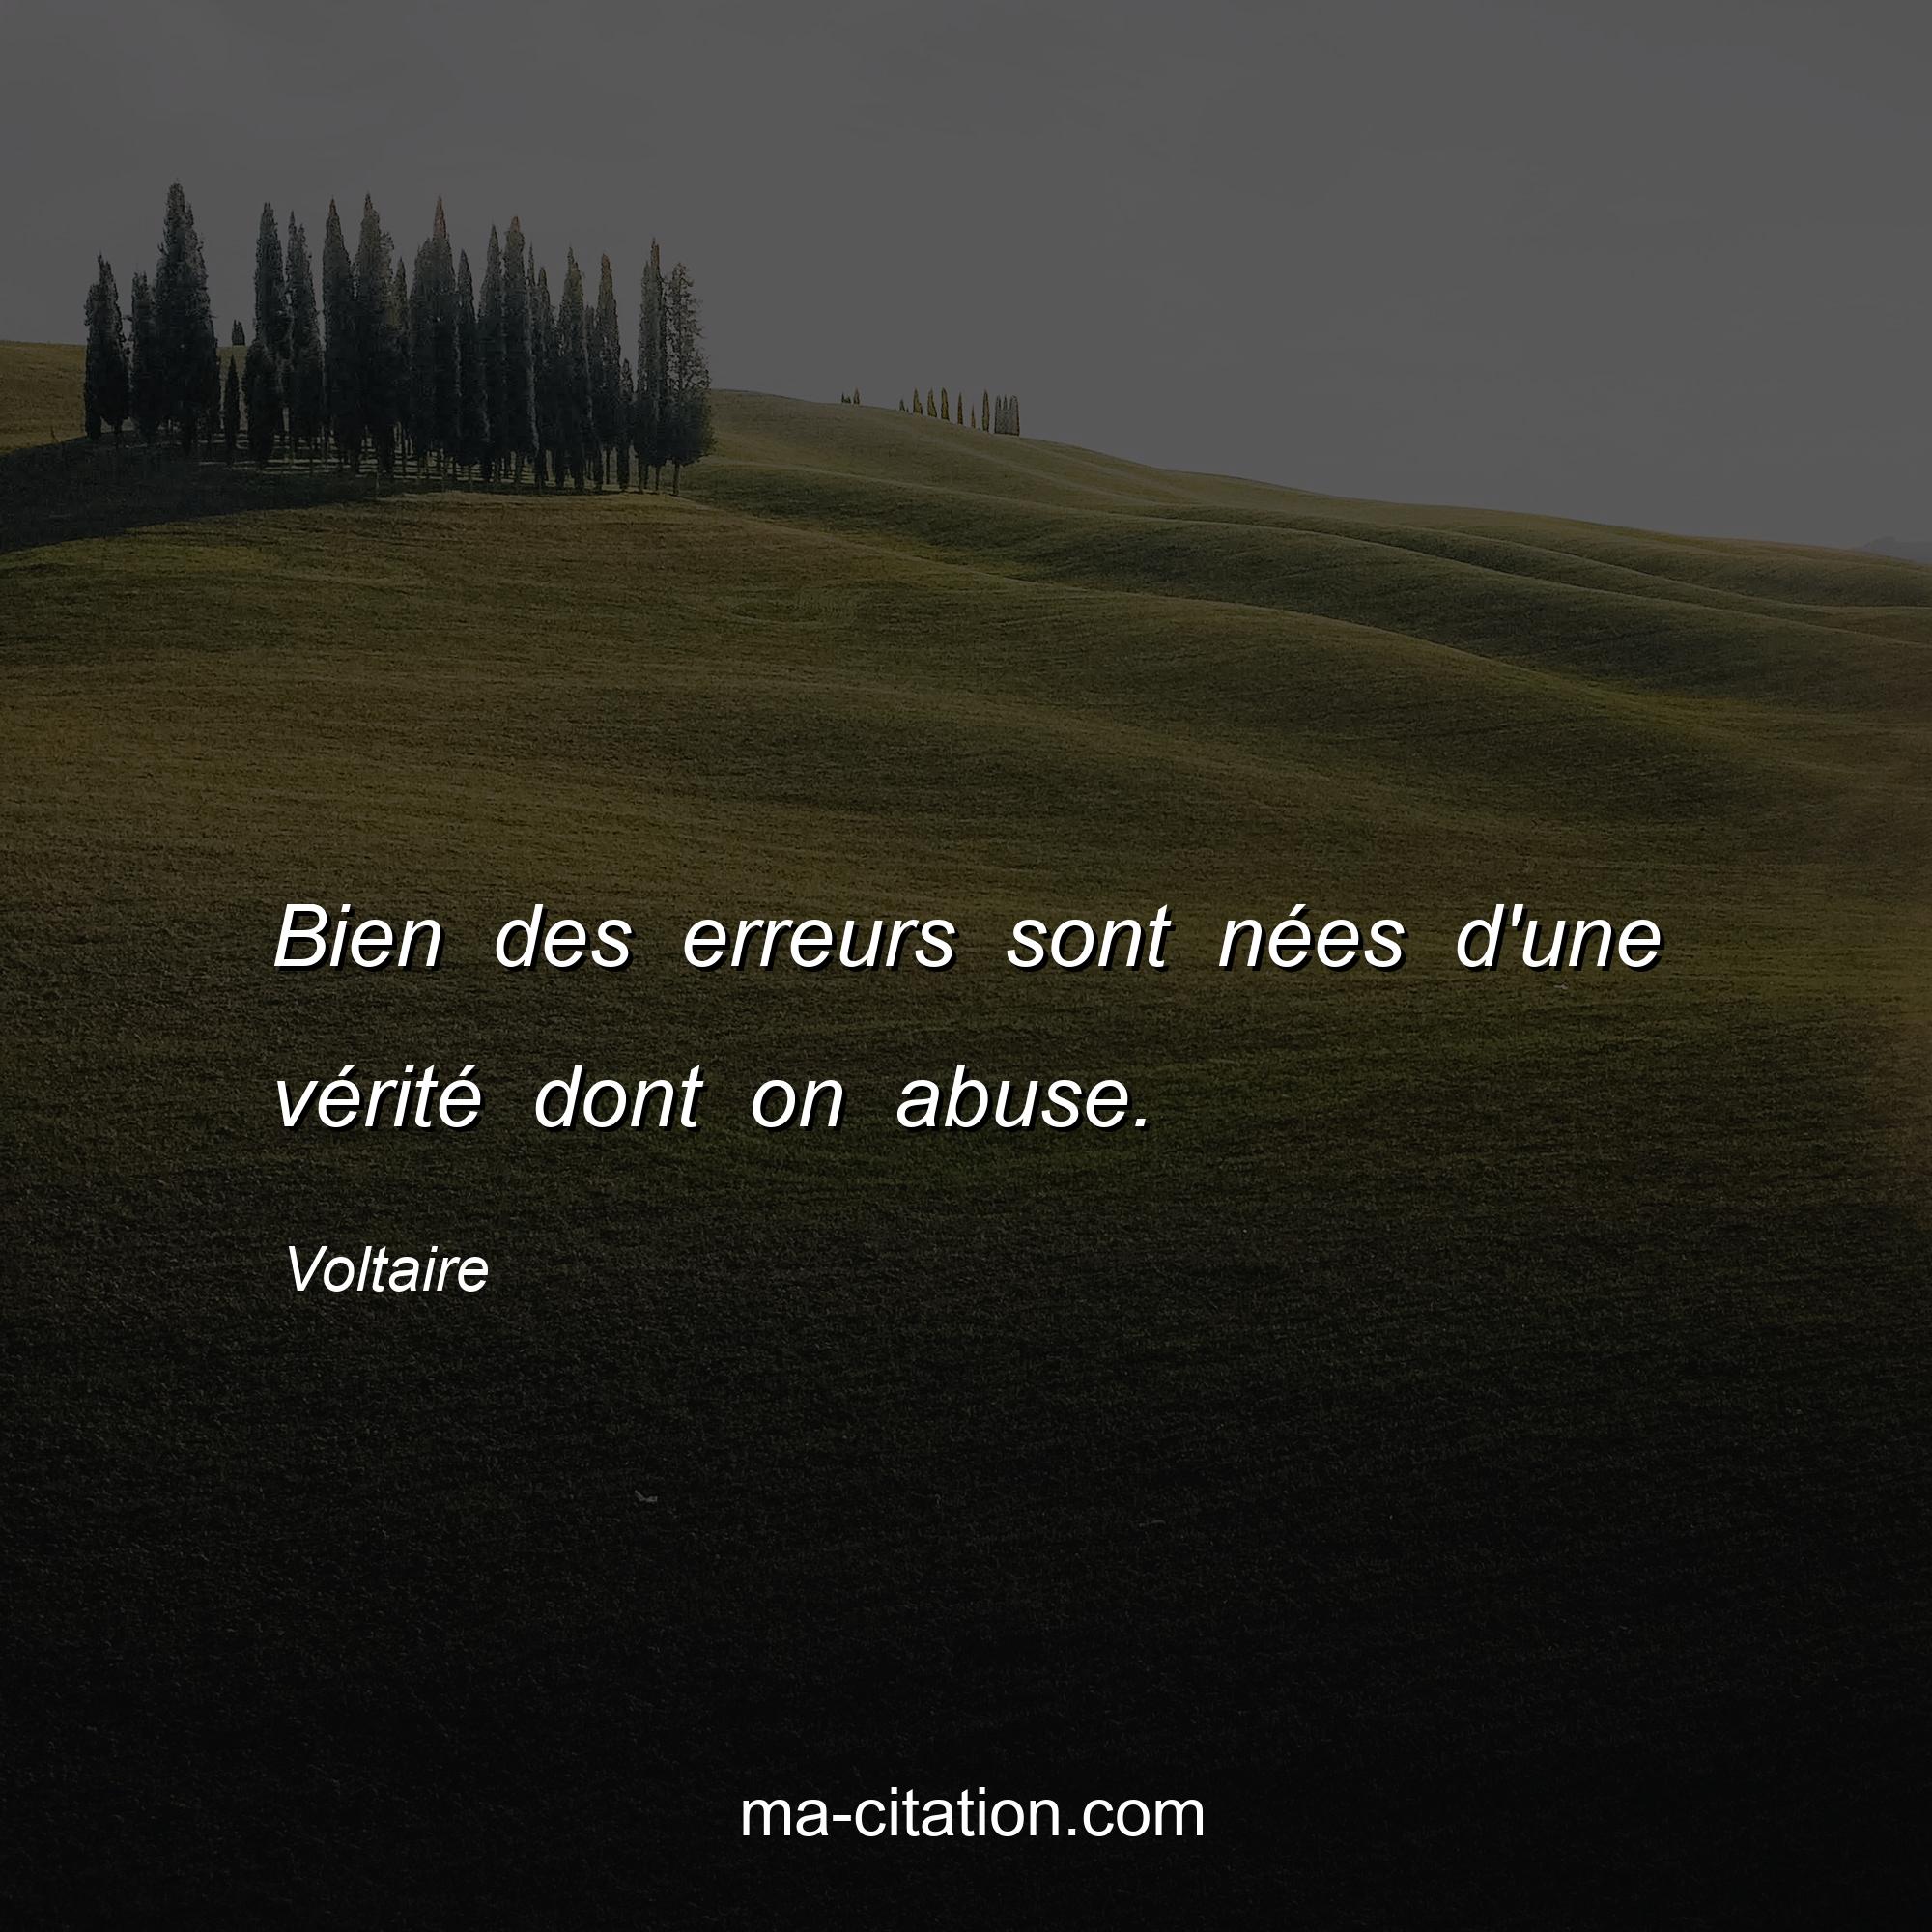 Voltaire : Bien des erreurs sont nées d'une vérité dont on abuse.